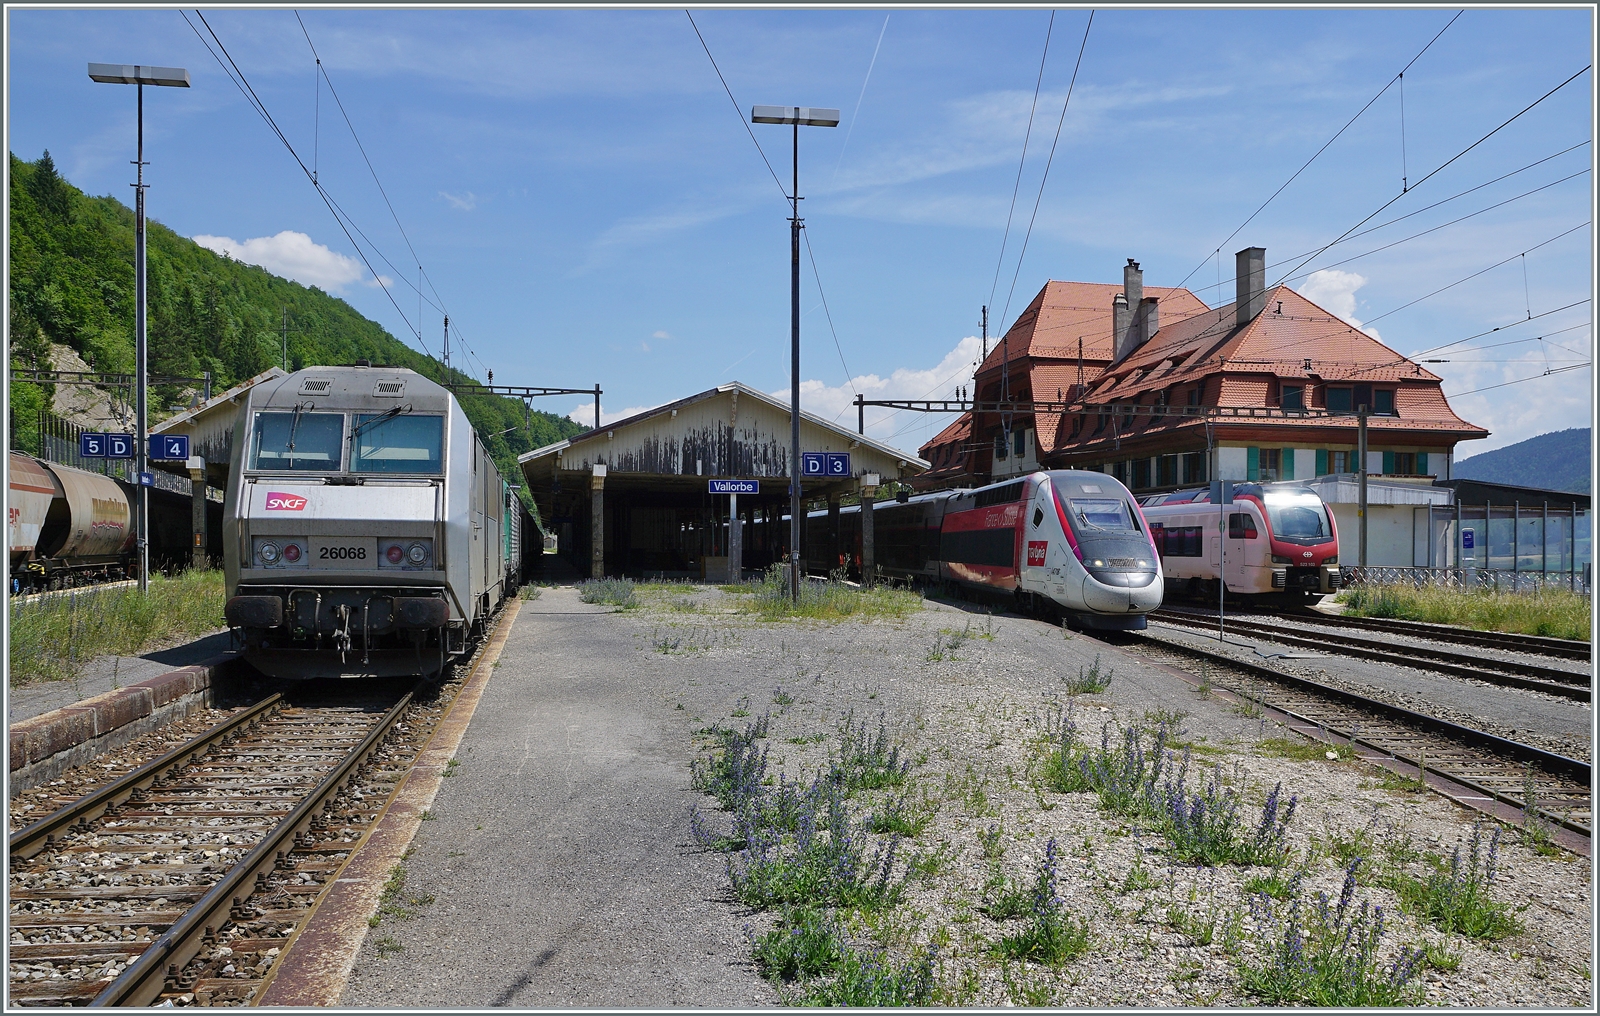 Auch die Zuglok des Gegenzuges, die SNCF BB 26068 setzt sich an die Spitze des nach Frankreich fahrenden Güterzuges. Recht im Bild ein TGV Lyria nach Paris Gare de Lyon und der  SBB RABe 523 103 nach Aigle. 

Ein schönes Bild der Betriebsamkeit, doch meistens ist es in Vallorbe eher ruhig, wenn nicht sogar sehr ruhig...

16. Juni 2022
